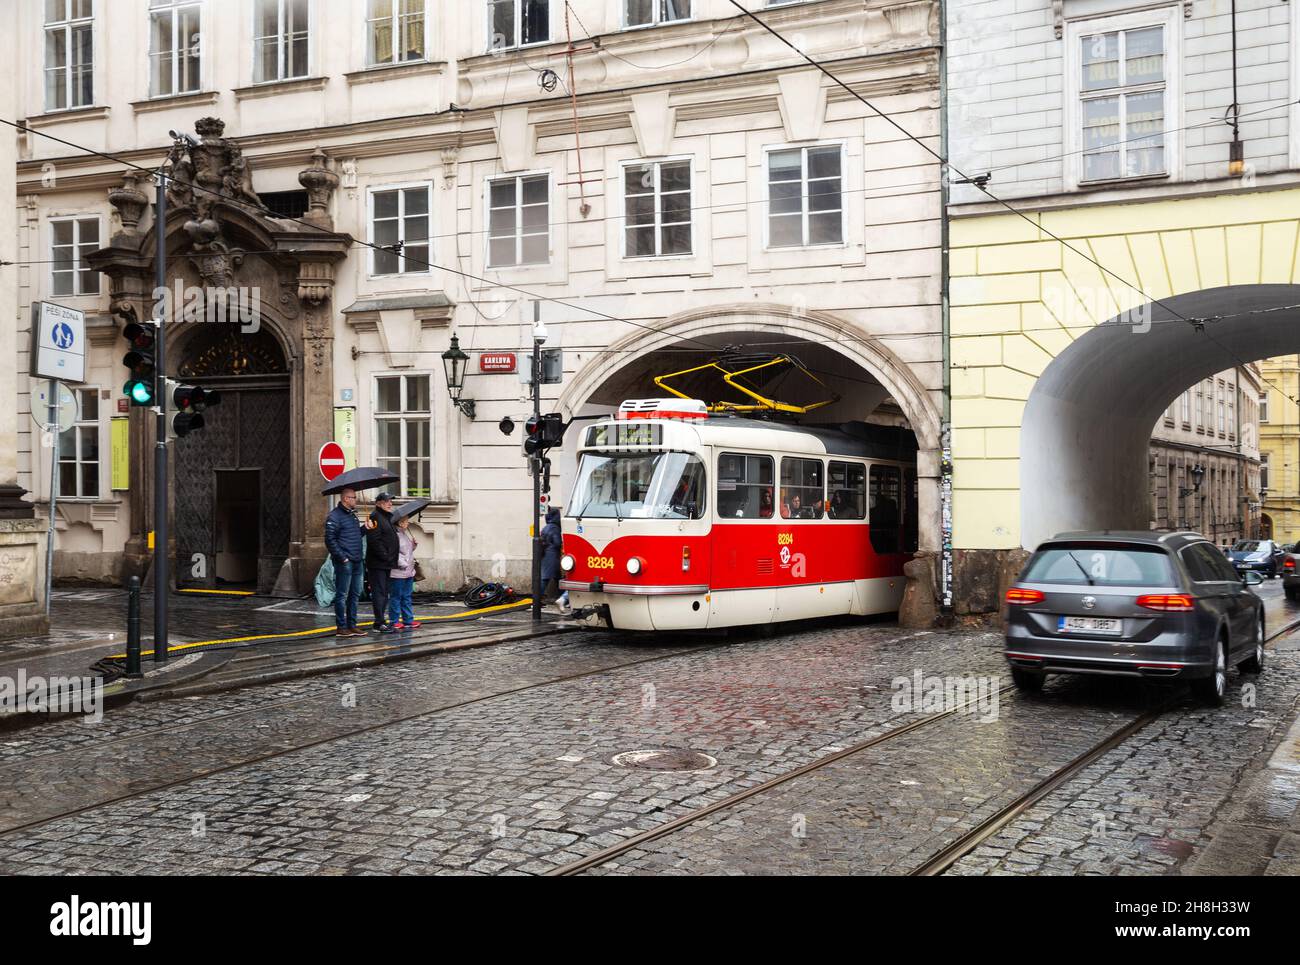 Praga - 11 marzo 2020: Tram vecchio su una strada stretta di Praga vicino al Ponte Carlo Foto Stock